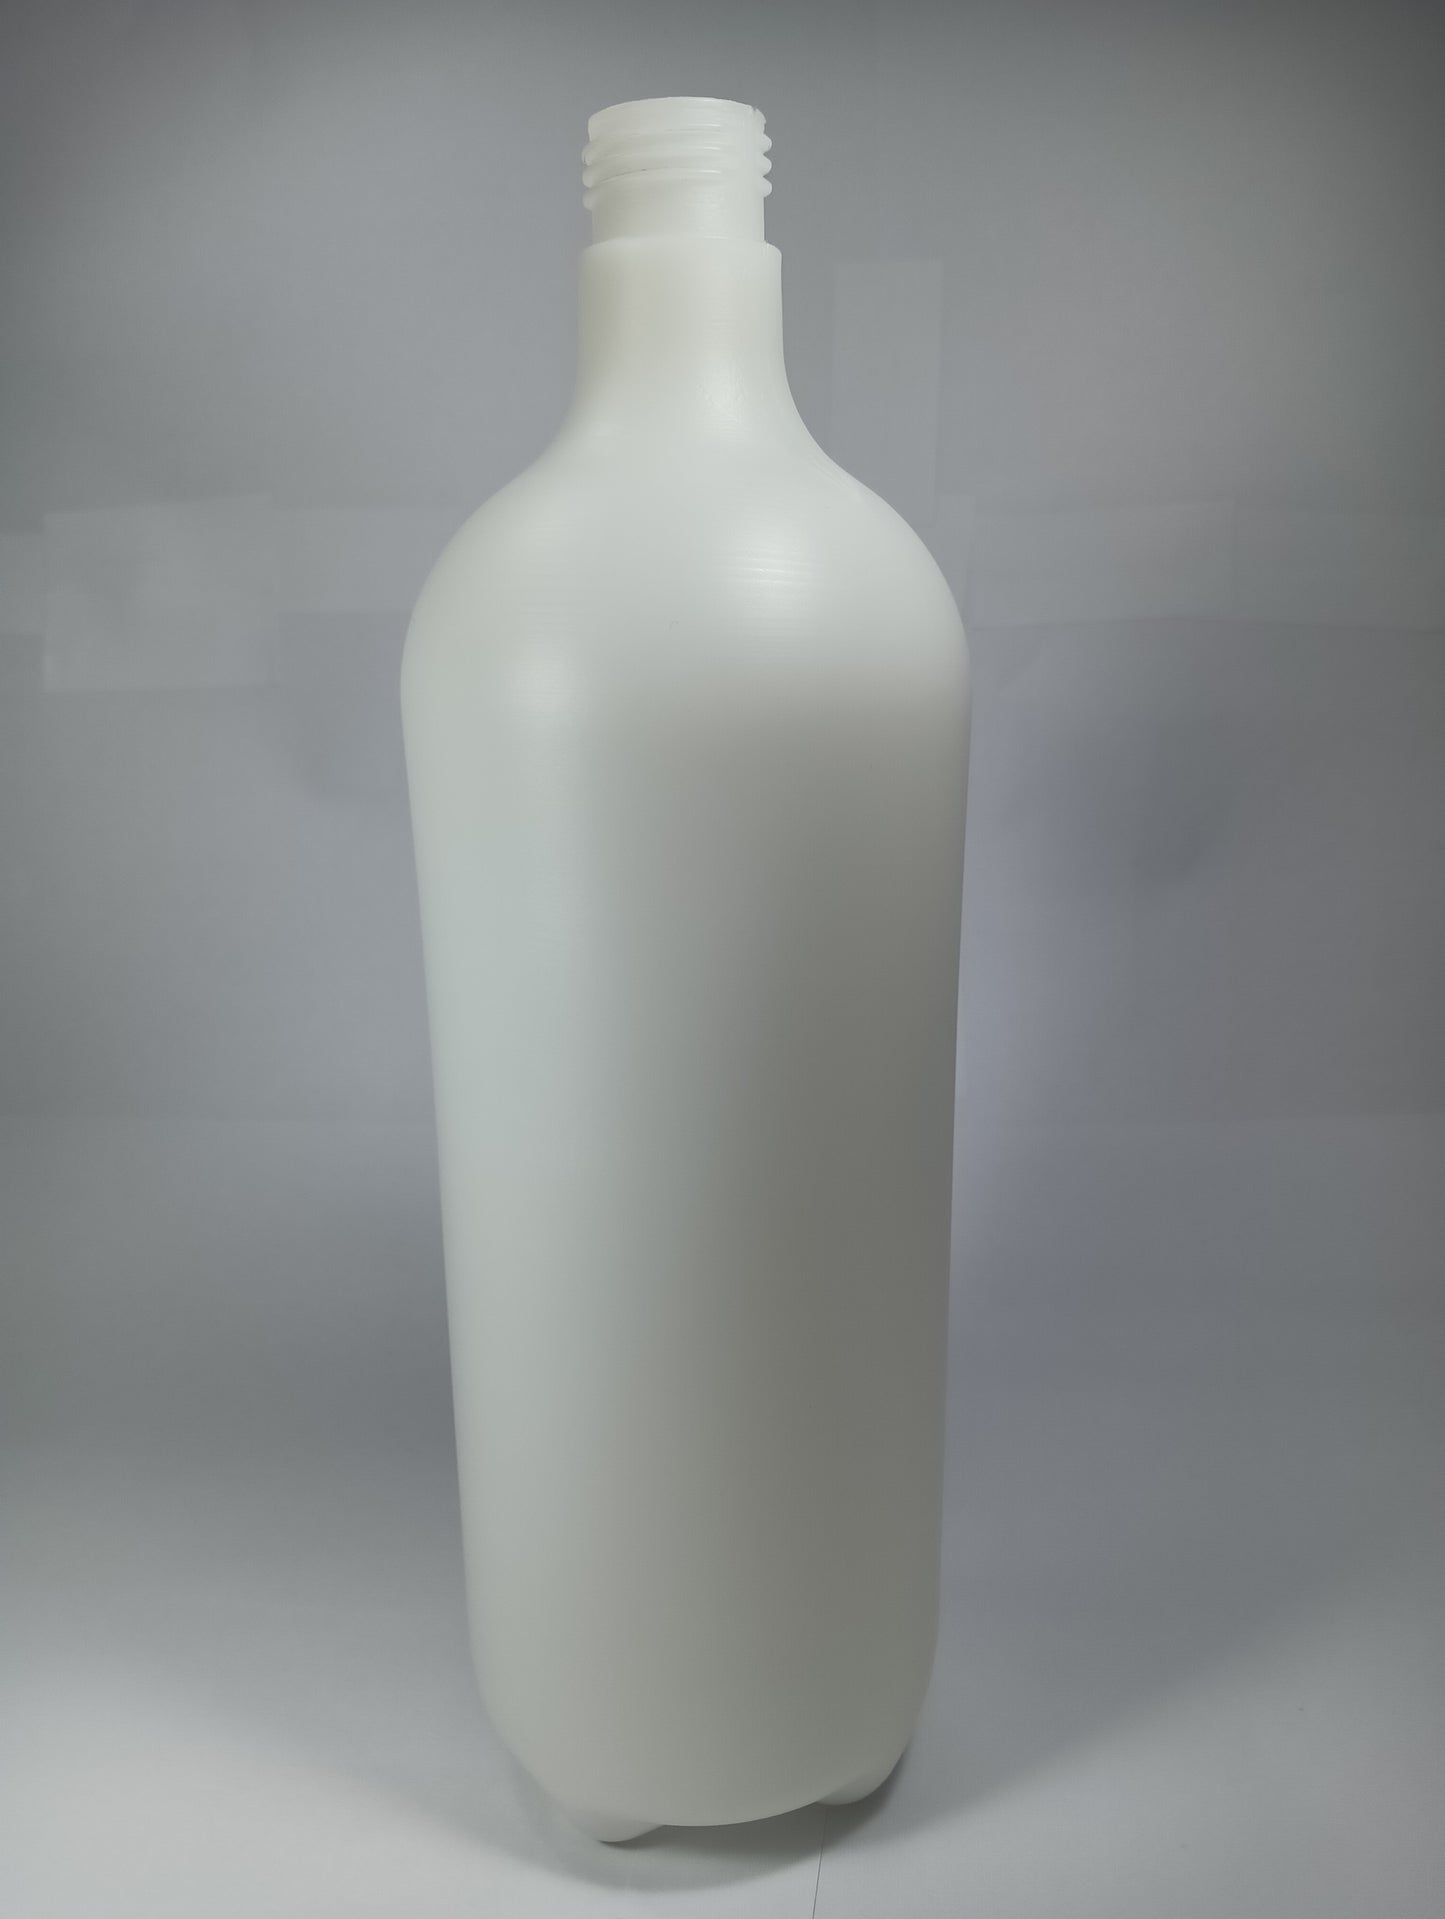 1 Liter Plastic Bottle